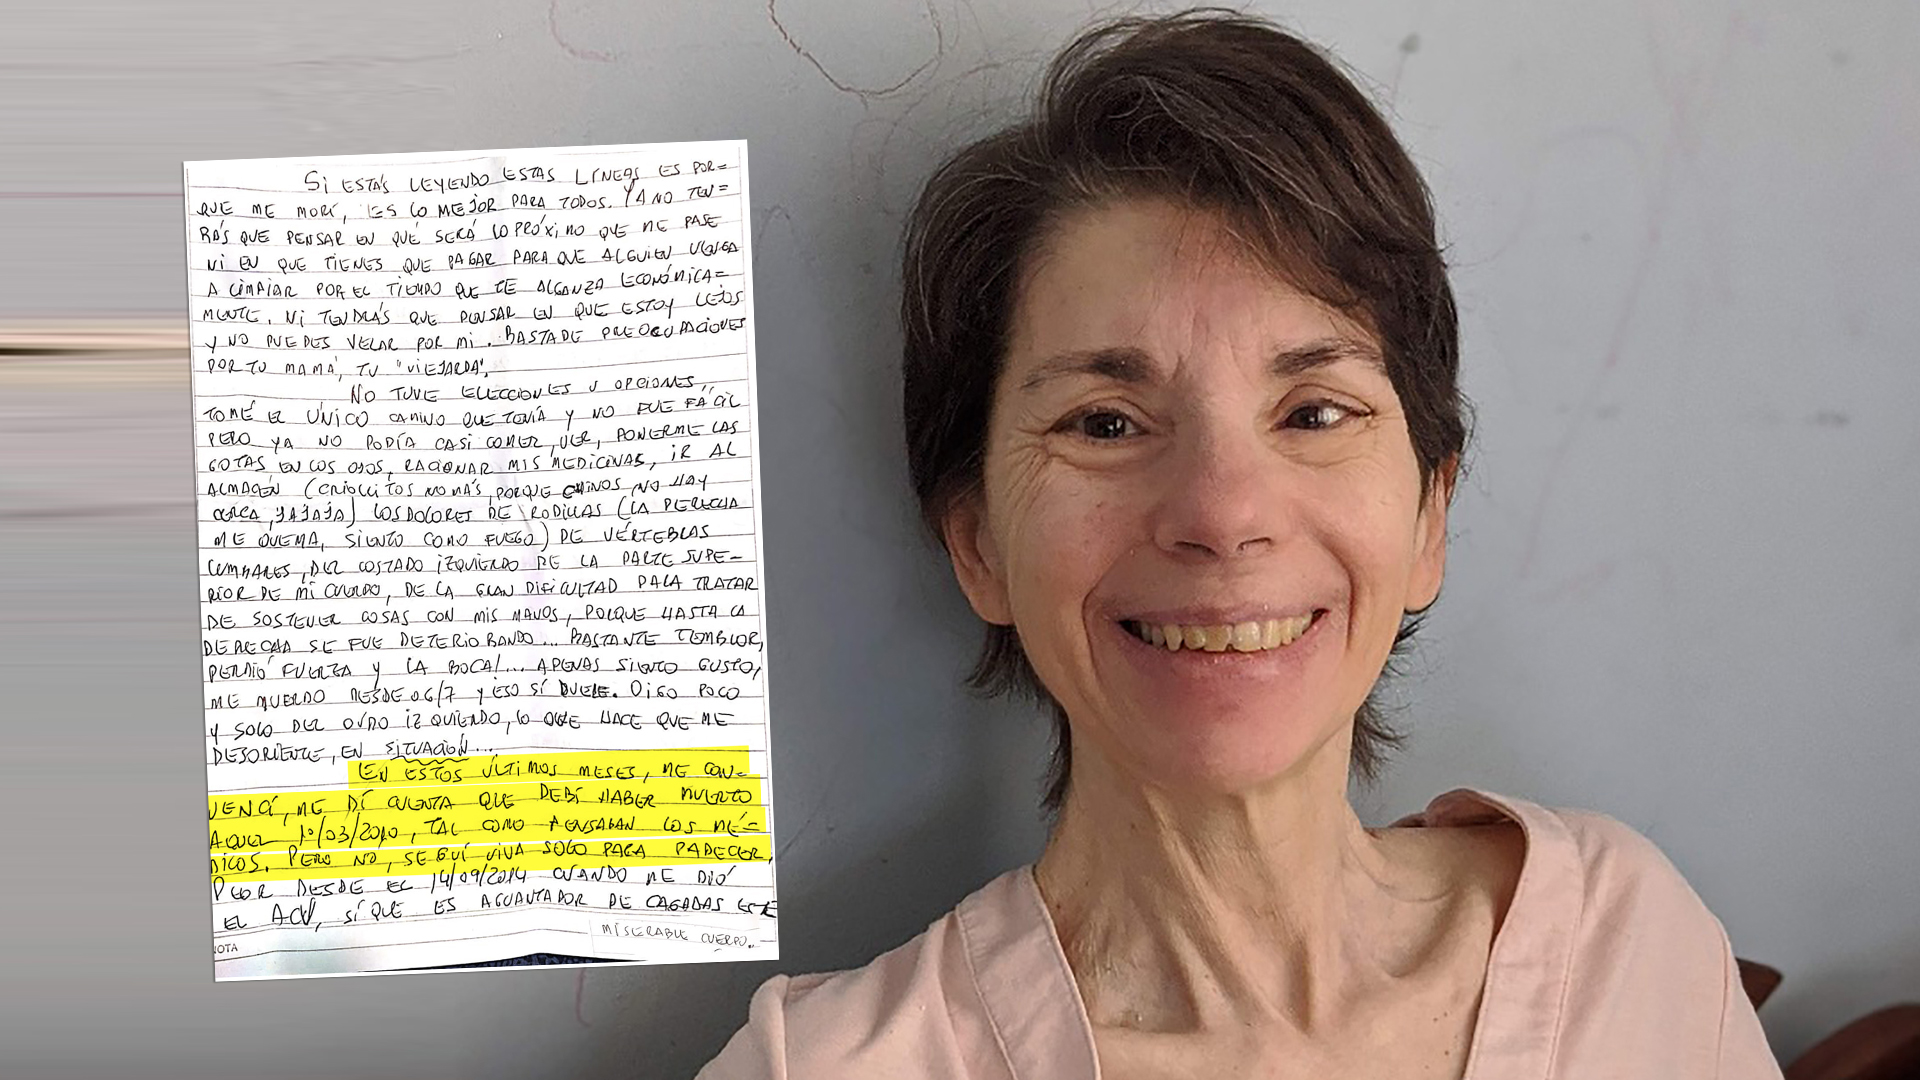 Mónica Vega falleció el 22 de abril de 2020, luego de quedar postrada en una cama por un ACV. Meses después de su muerte, sus hijos encontraron unas cartas que la mujer dejó escritas donde cuenta que intentó quitarse la vida 